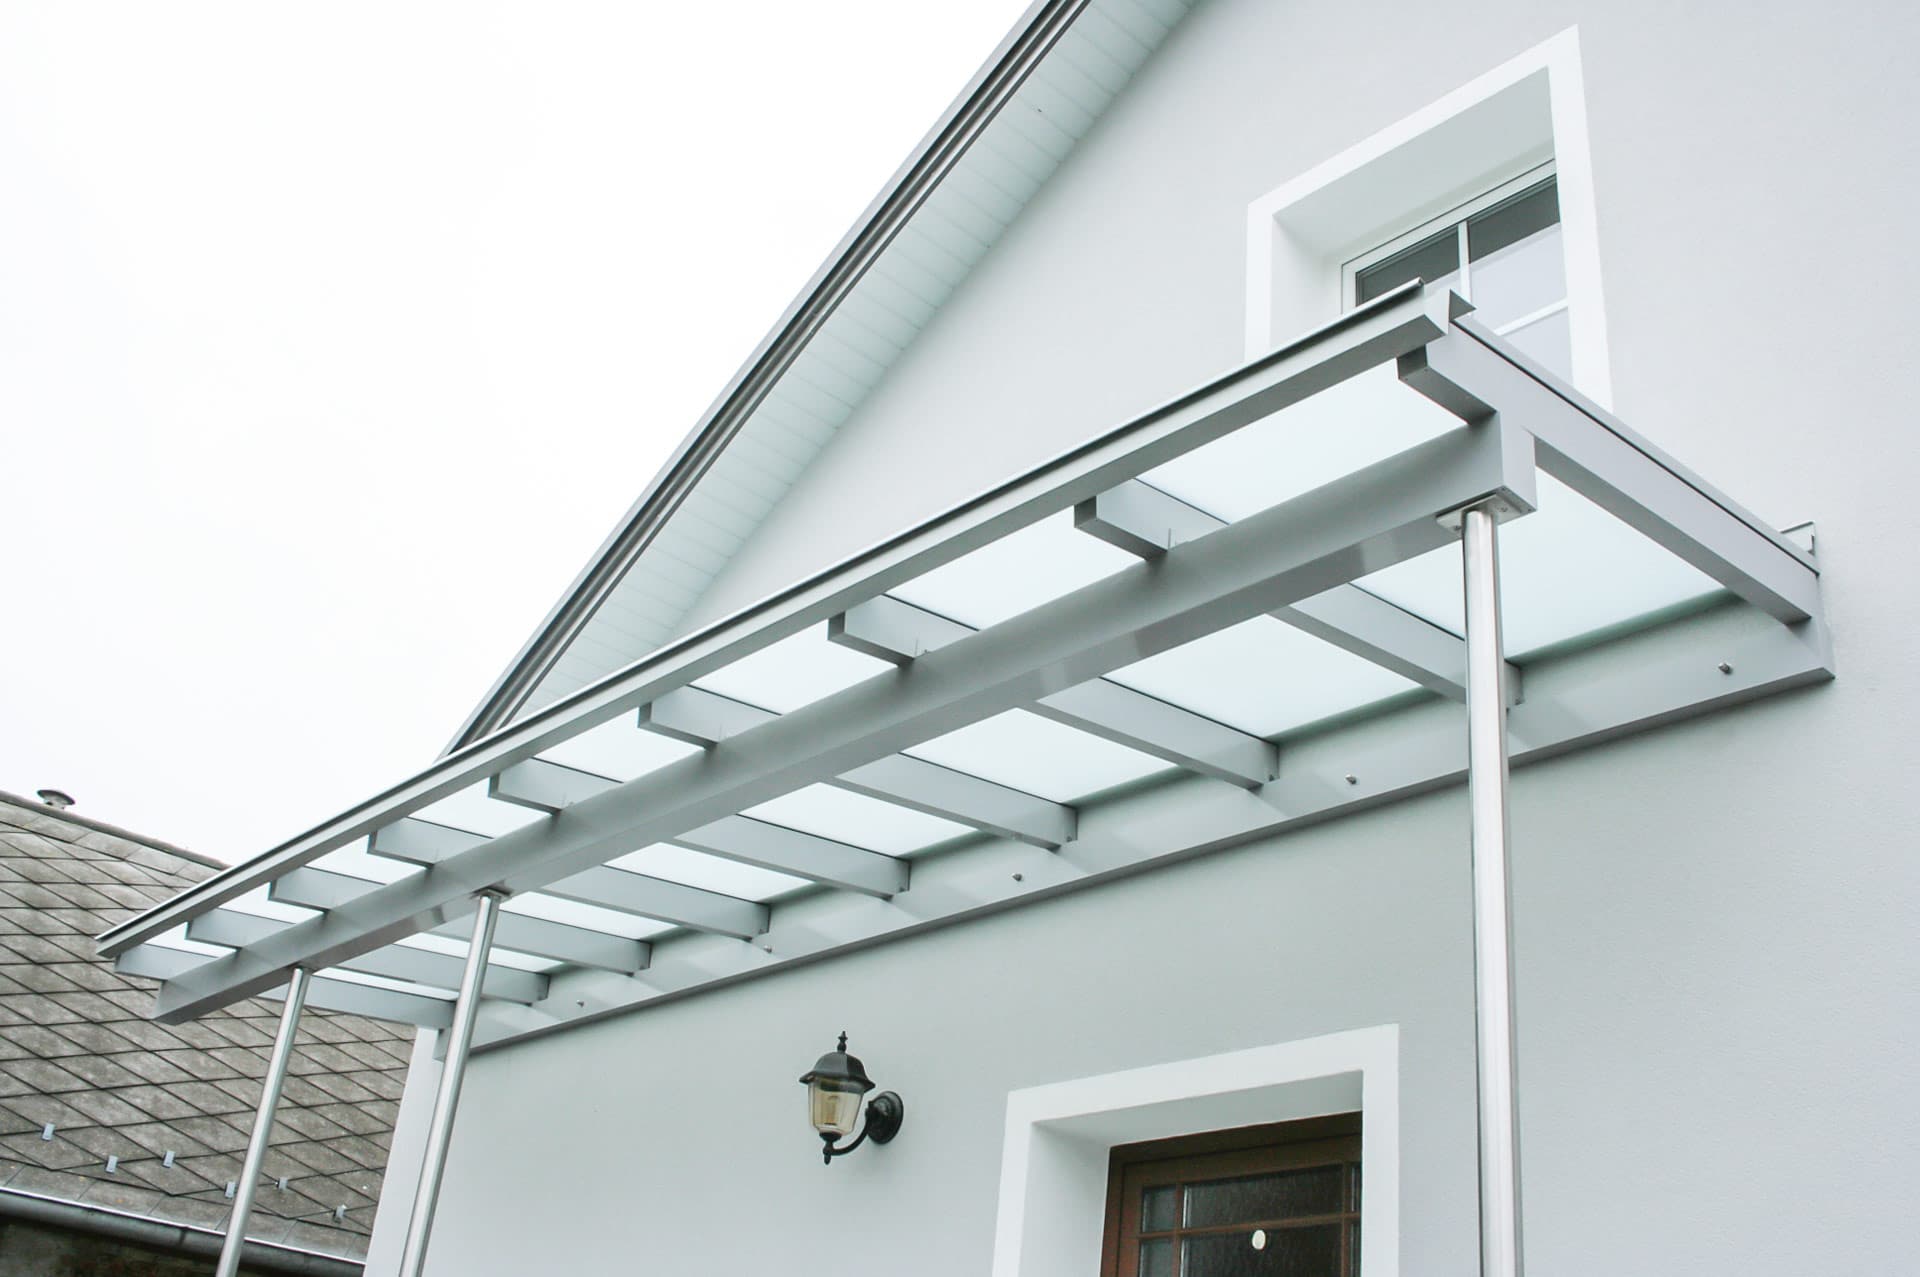 Vordach Alu 09 b | Alu-Glas-Dach grau, Edelstahl-Steher, Sparren auf Querbalken aufgelegt | Svoboda